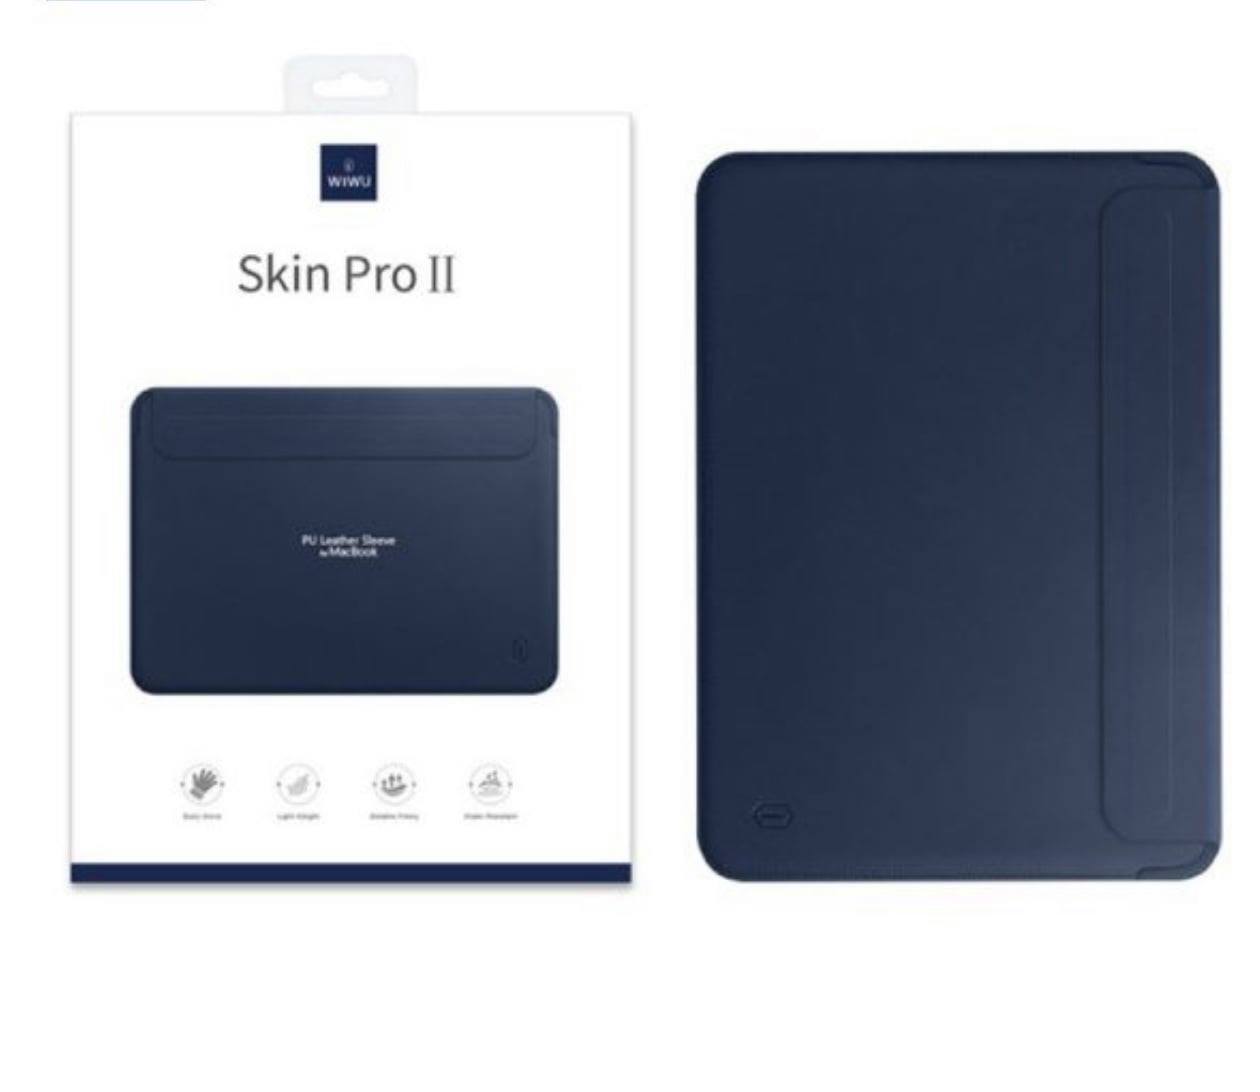 Bao Da Wiwu Skin Pro II Dành Cho Macbook Pro Chất Liệu Vải Sợi Nhỏ Chất Lượng Cao - Hàng Chính Hãng 